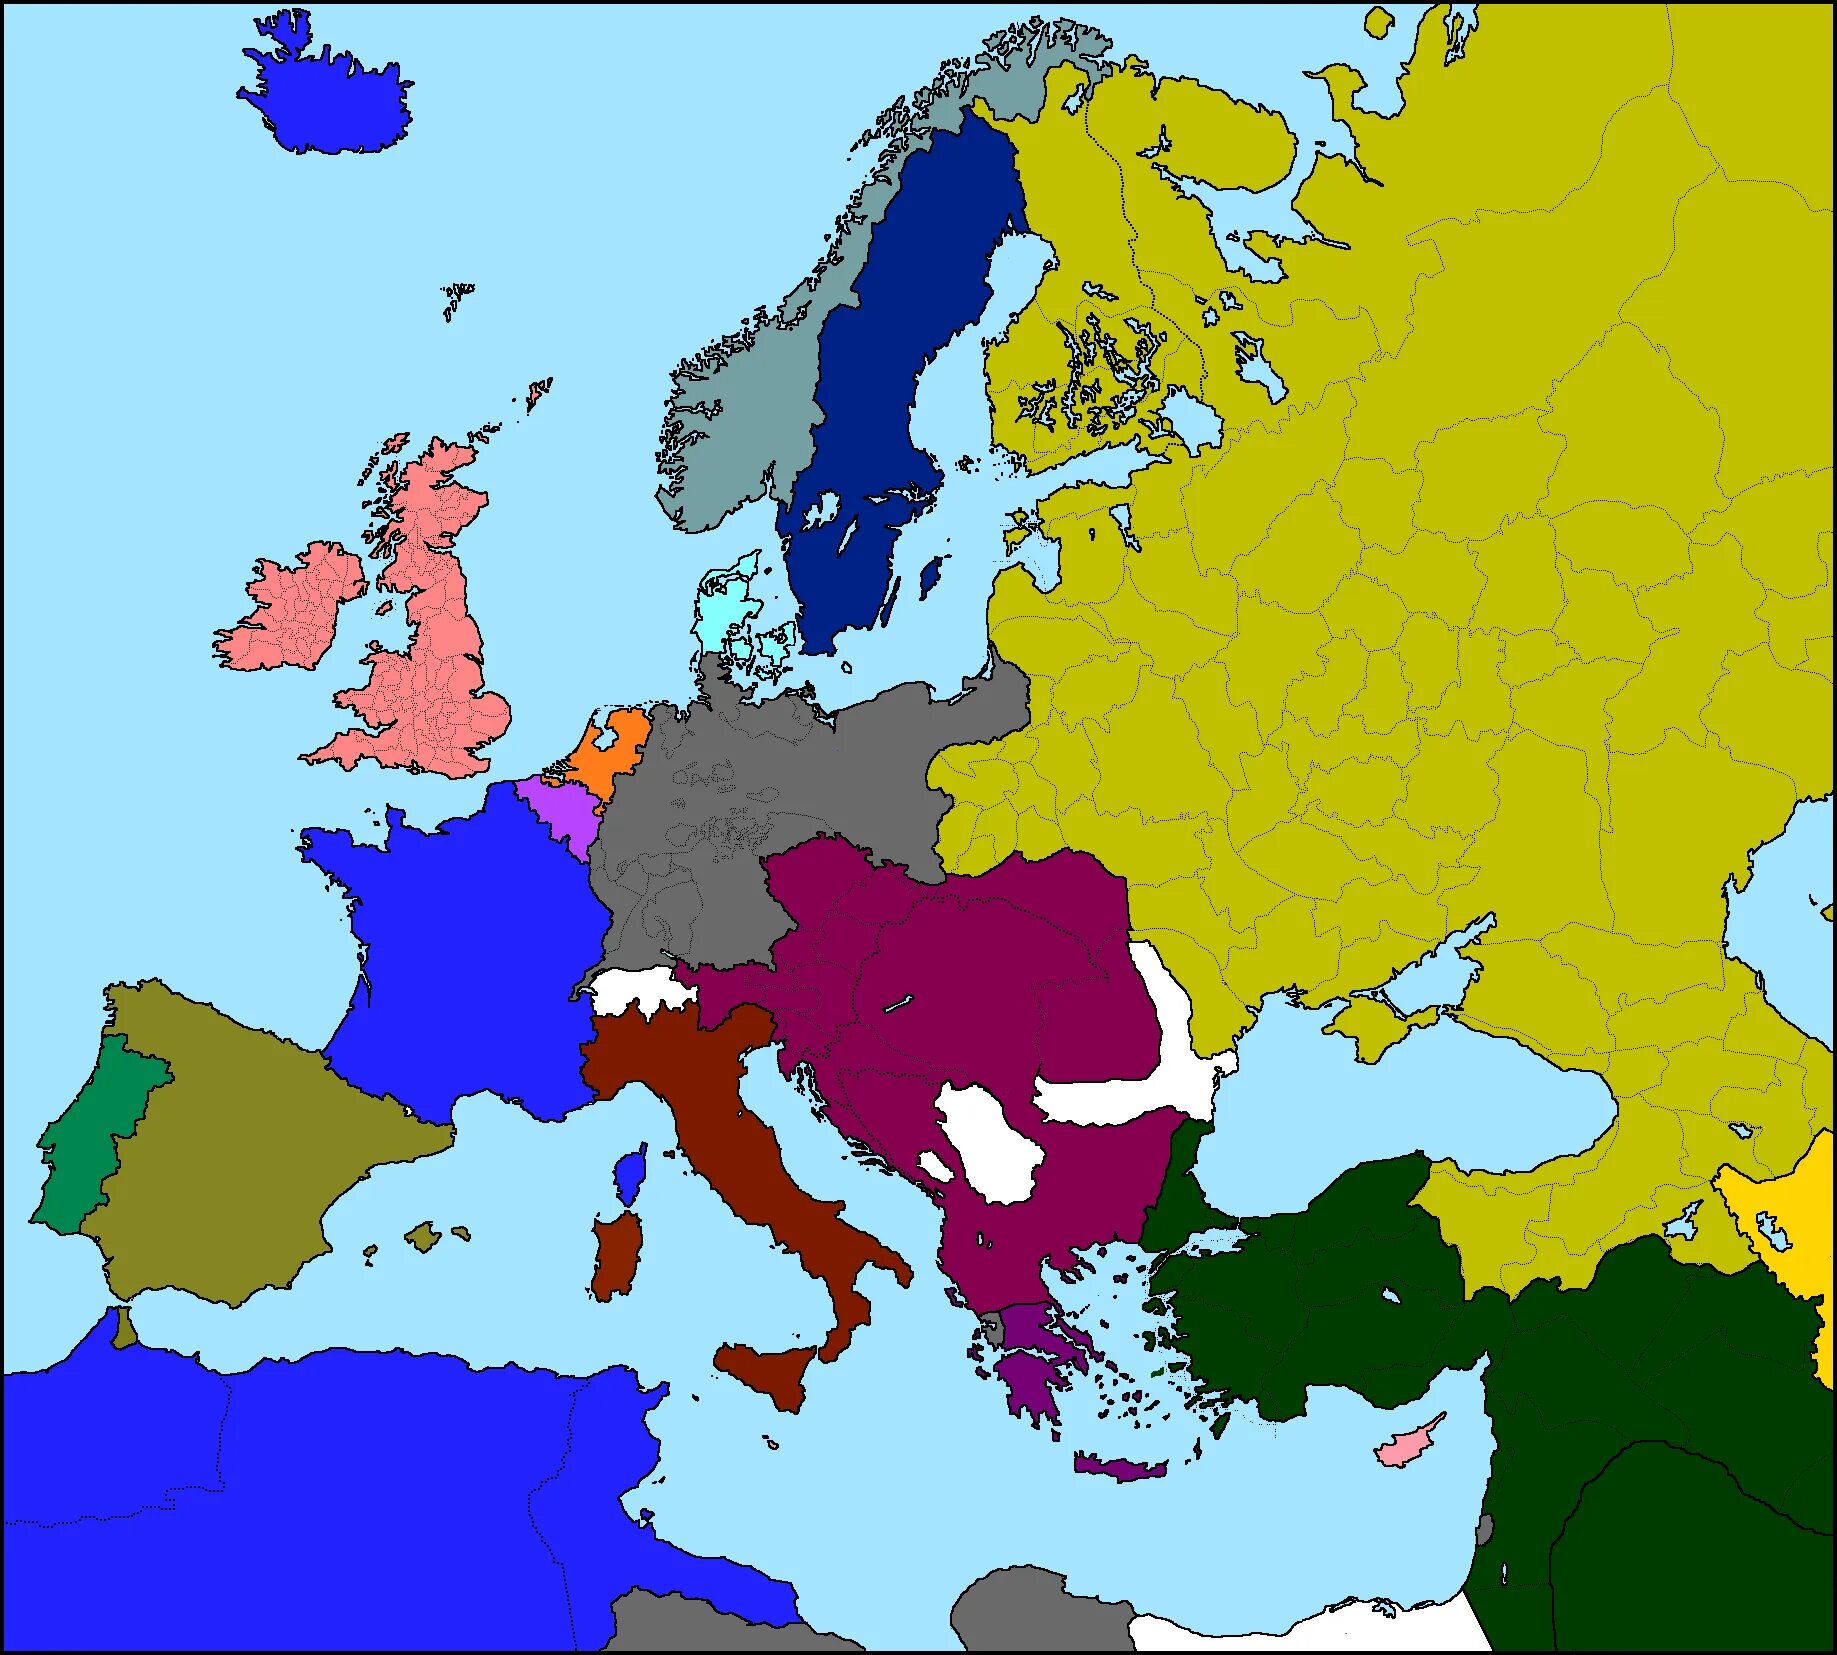 Europa 1 2. Карта Европы 1914. Карта Европы ww1. Карта Европы 1914 маппинг. Европа в 1914 году.